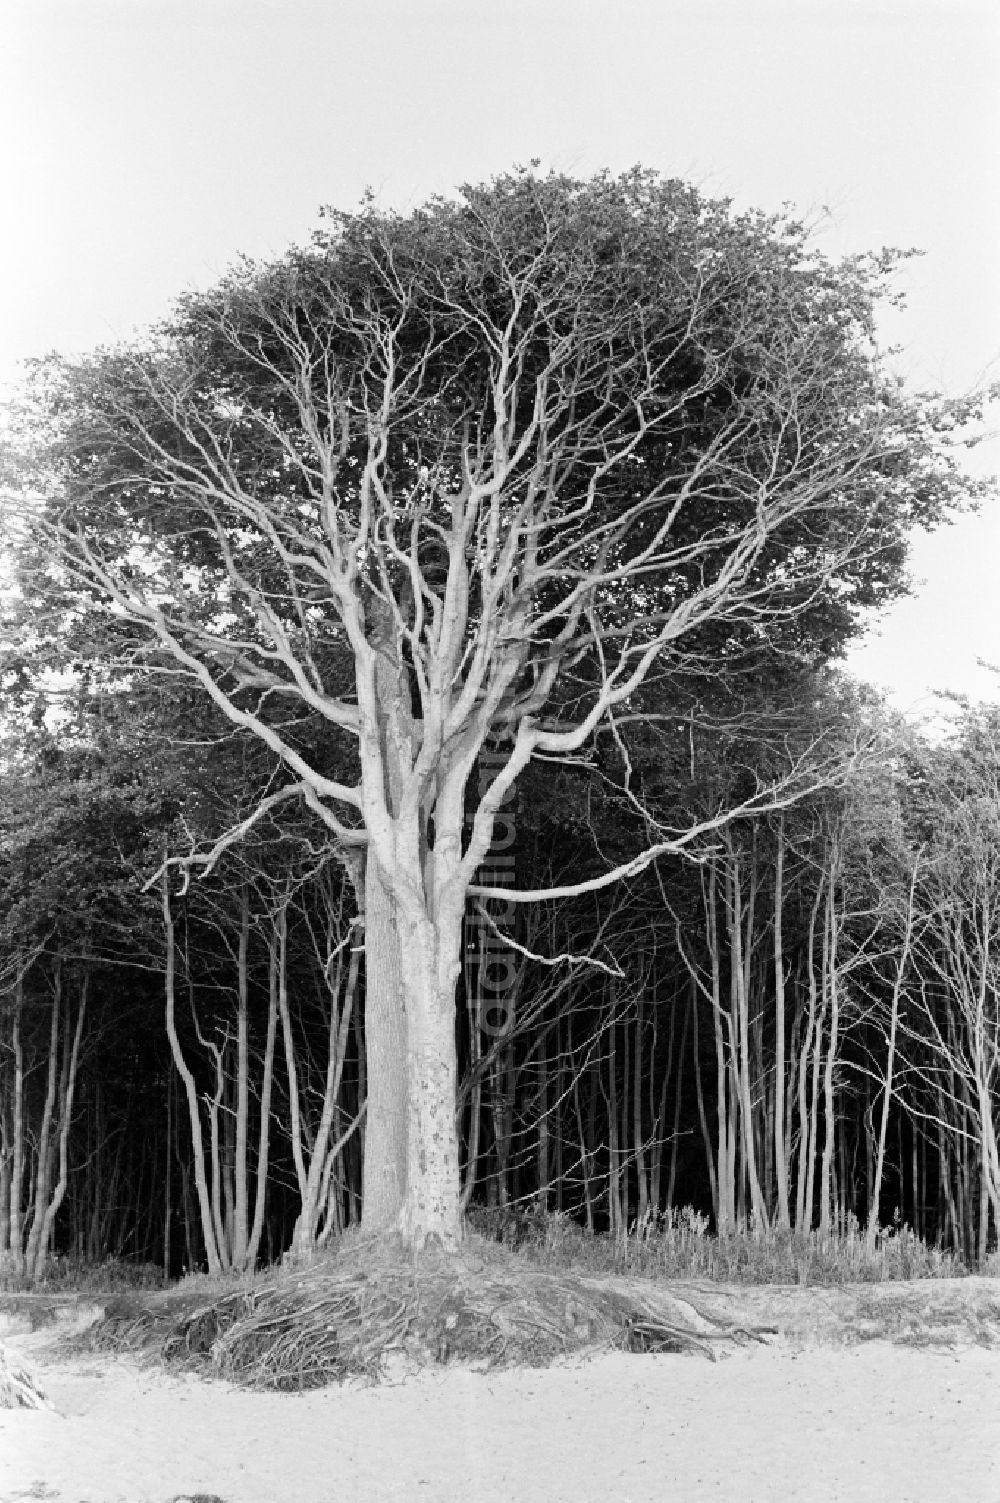 DDR-Fotoarchiv: Graal-Müritz - Ostseestrand mit entwurzelten Bäumen in Graal-Müritz in der DDR